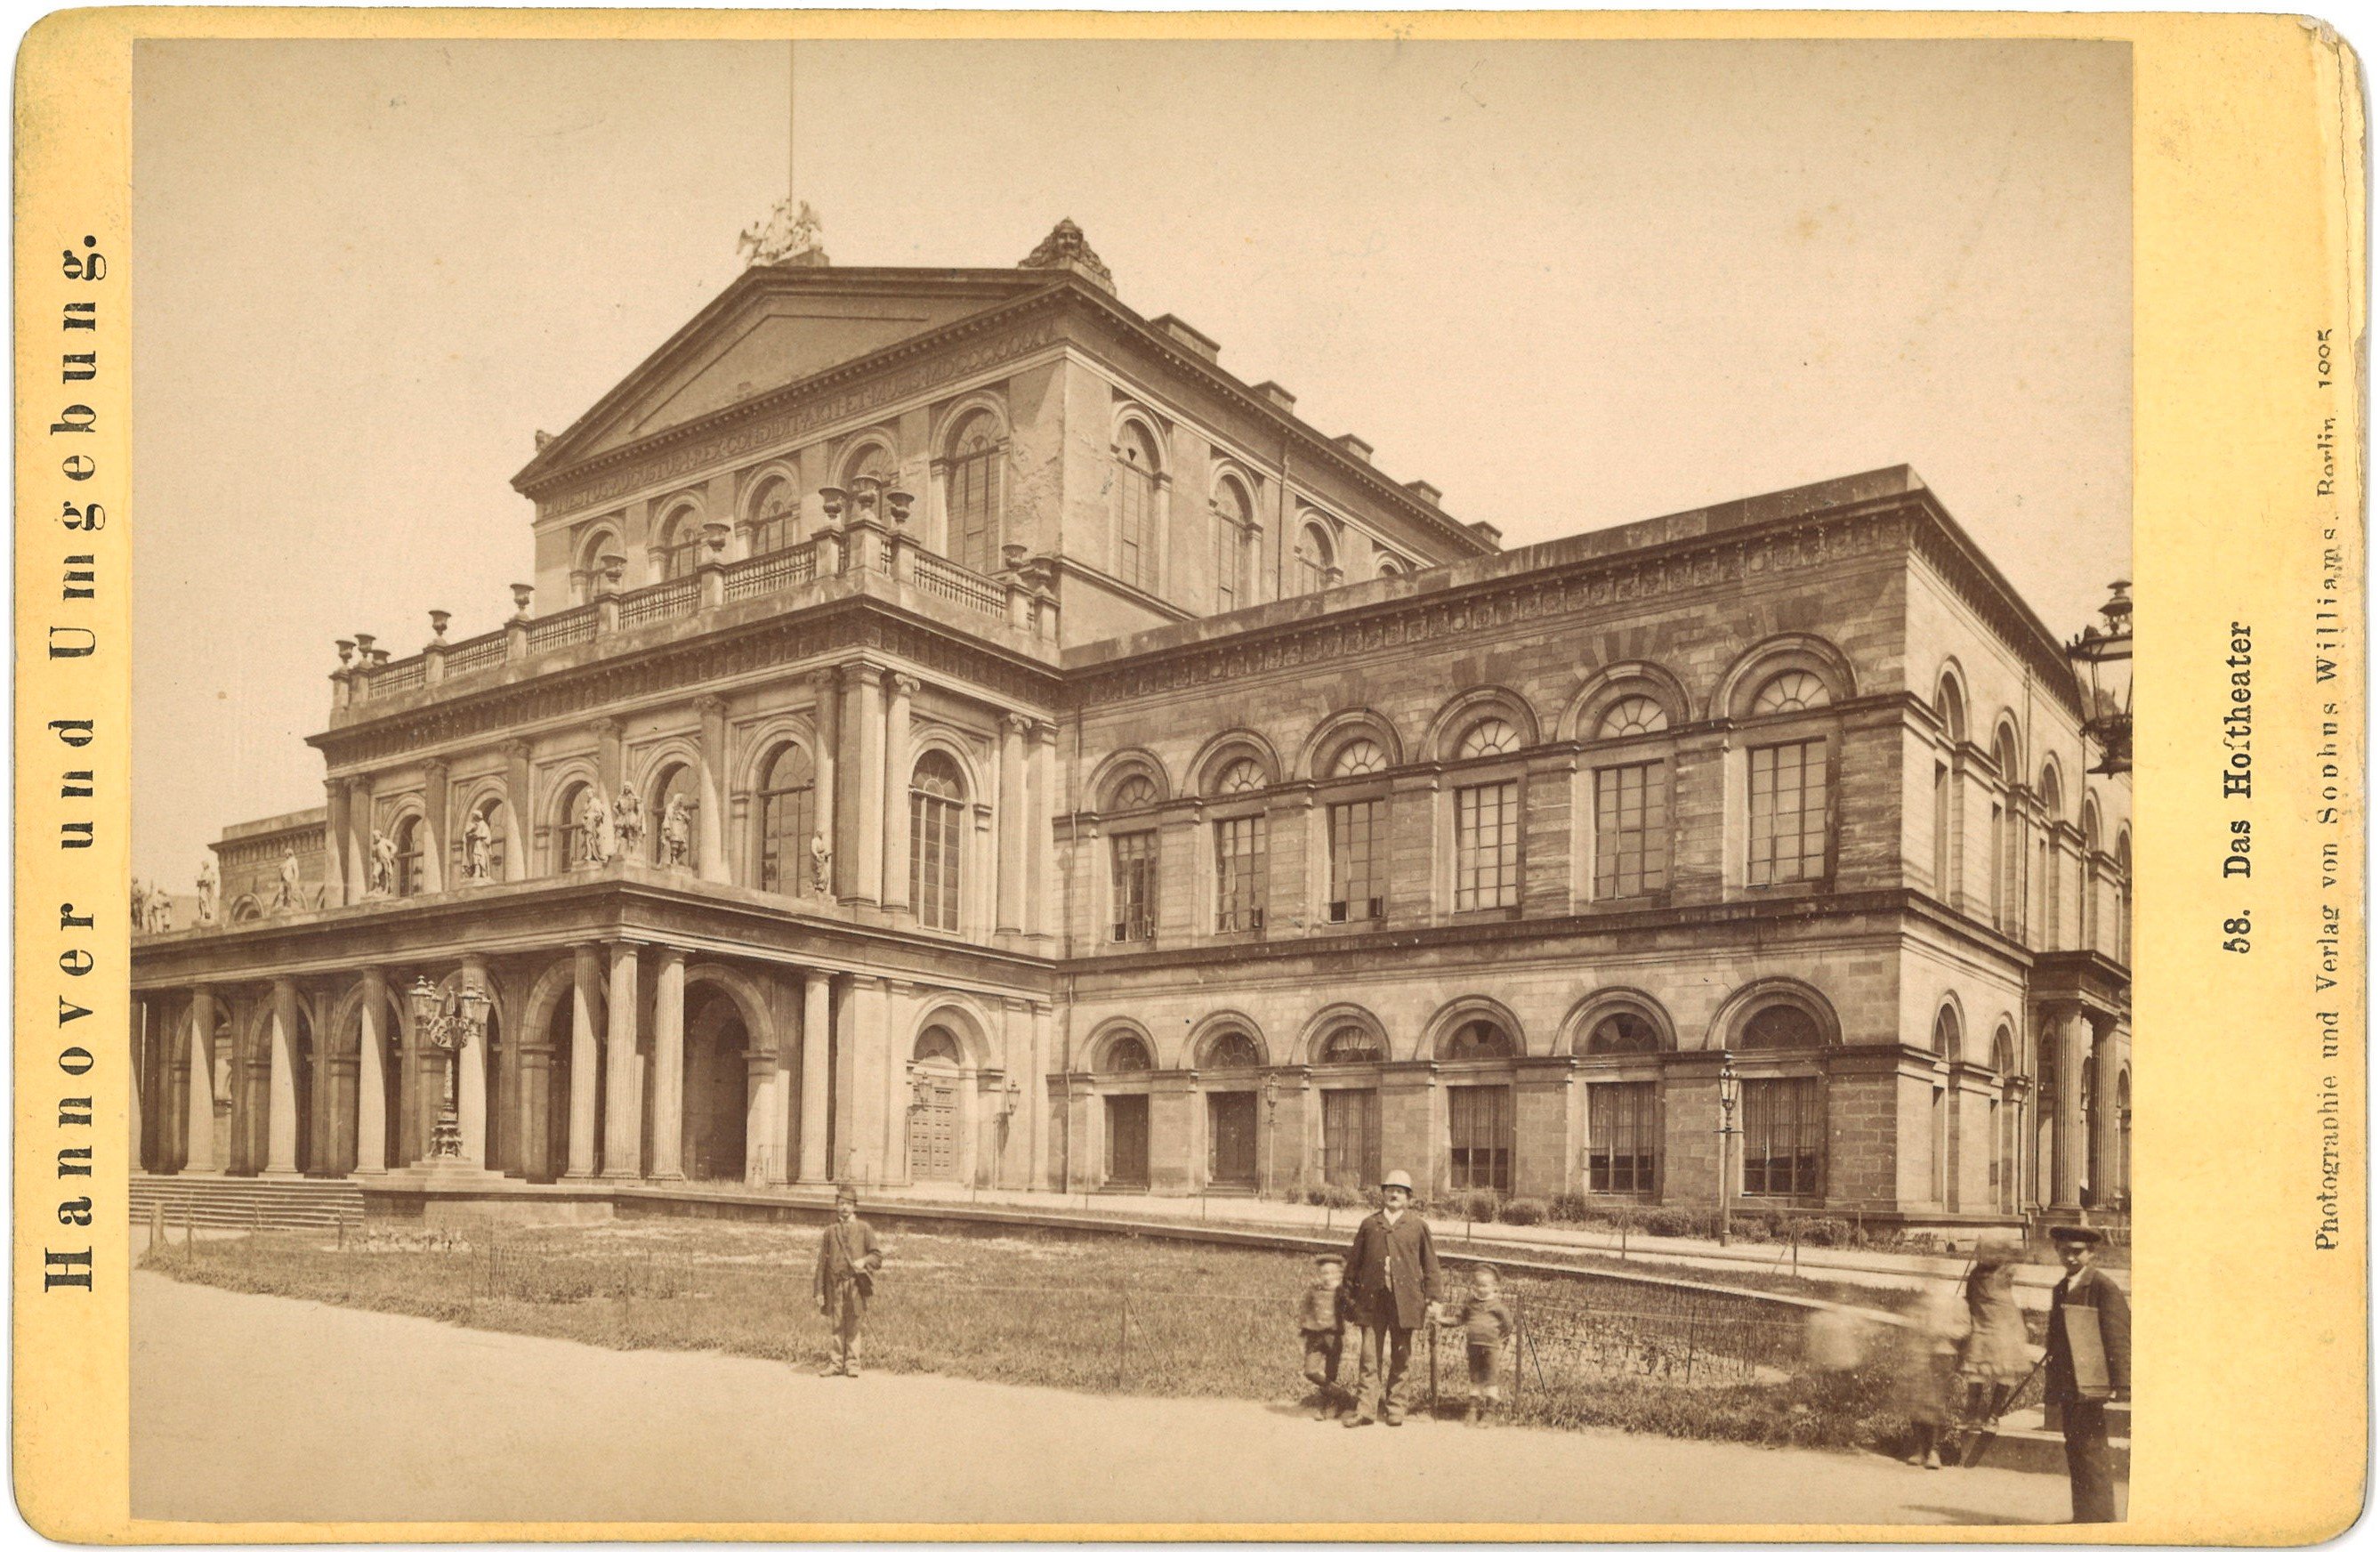 Hannover: Hoftheater (Opernhaus) (Landesgeschichtliche Vereinigung für die Mark Brandenburg e.V., Archiv CC BY)